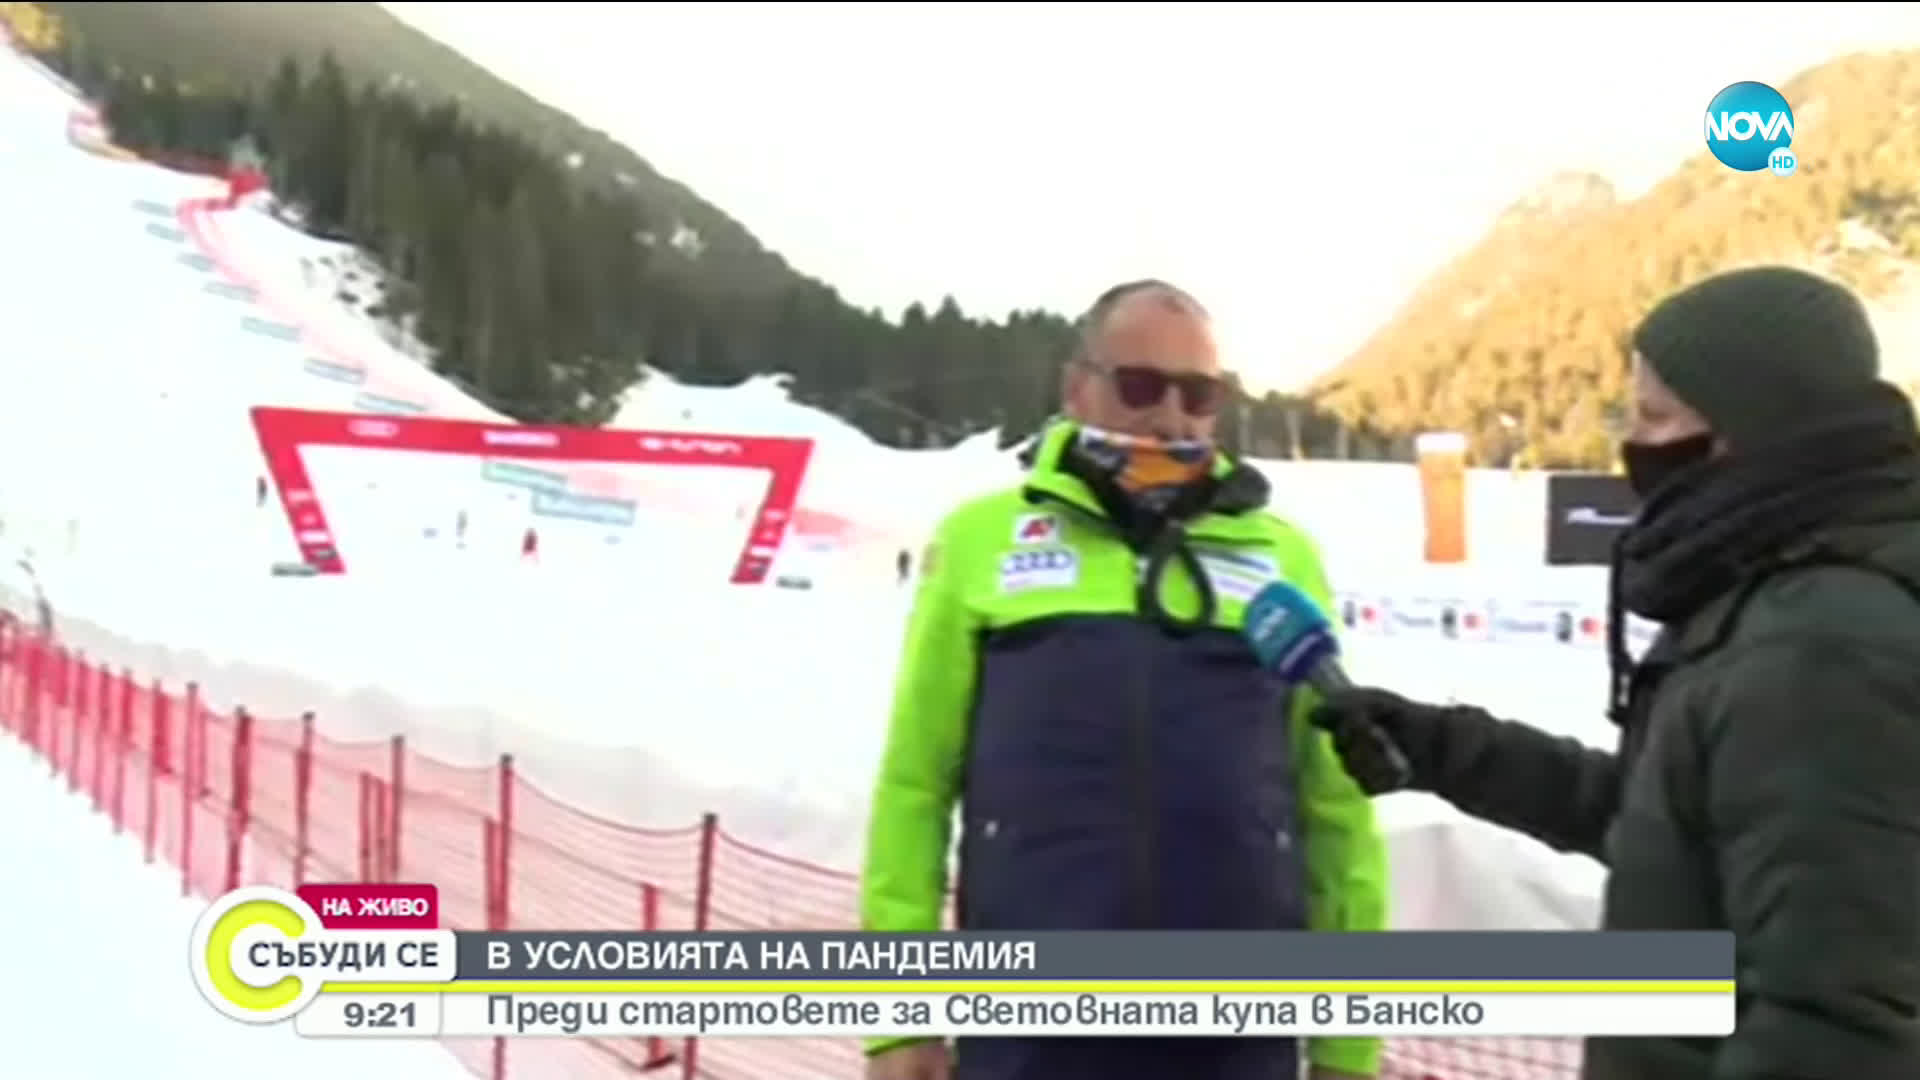 В УСЛОВИЯТА НА ПАНДЕМИЯ: Старт на Световната купа по ски в Банско